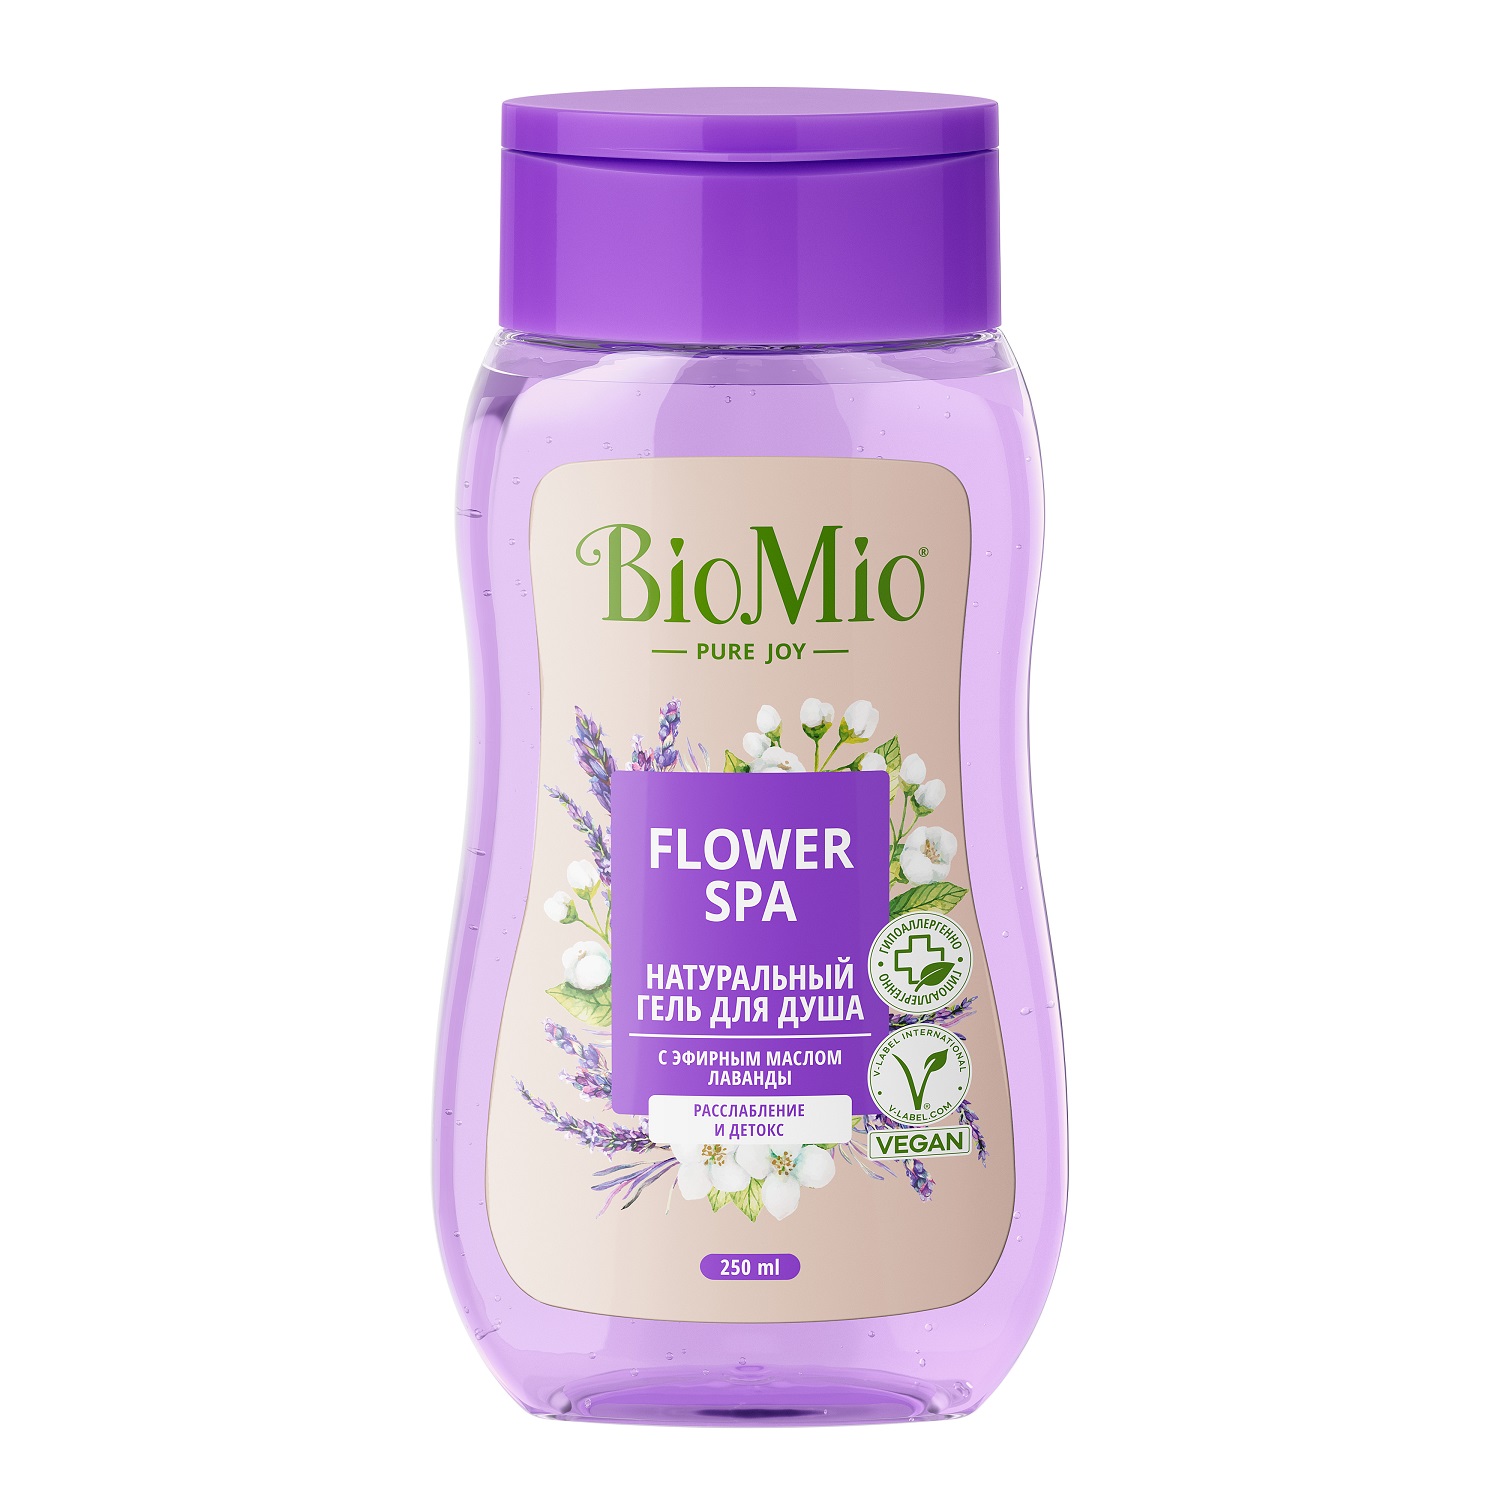 BioMio Гель для душа с эфирными маслами лаванды Flower Spa 3+, 250 мл (BioMio, Для ванны и душа) гель для душа натуральный biomio с эфирным маслом лаванды 0 25 л